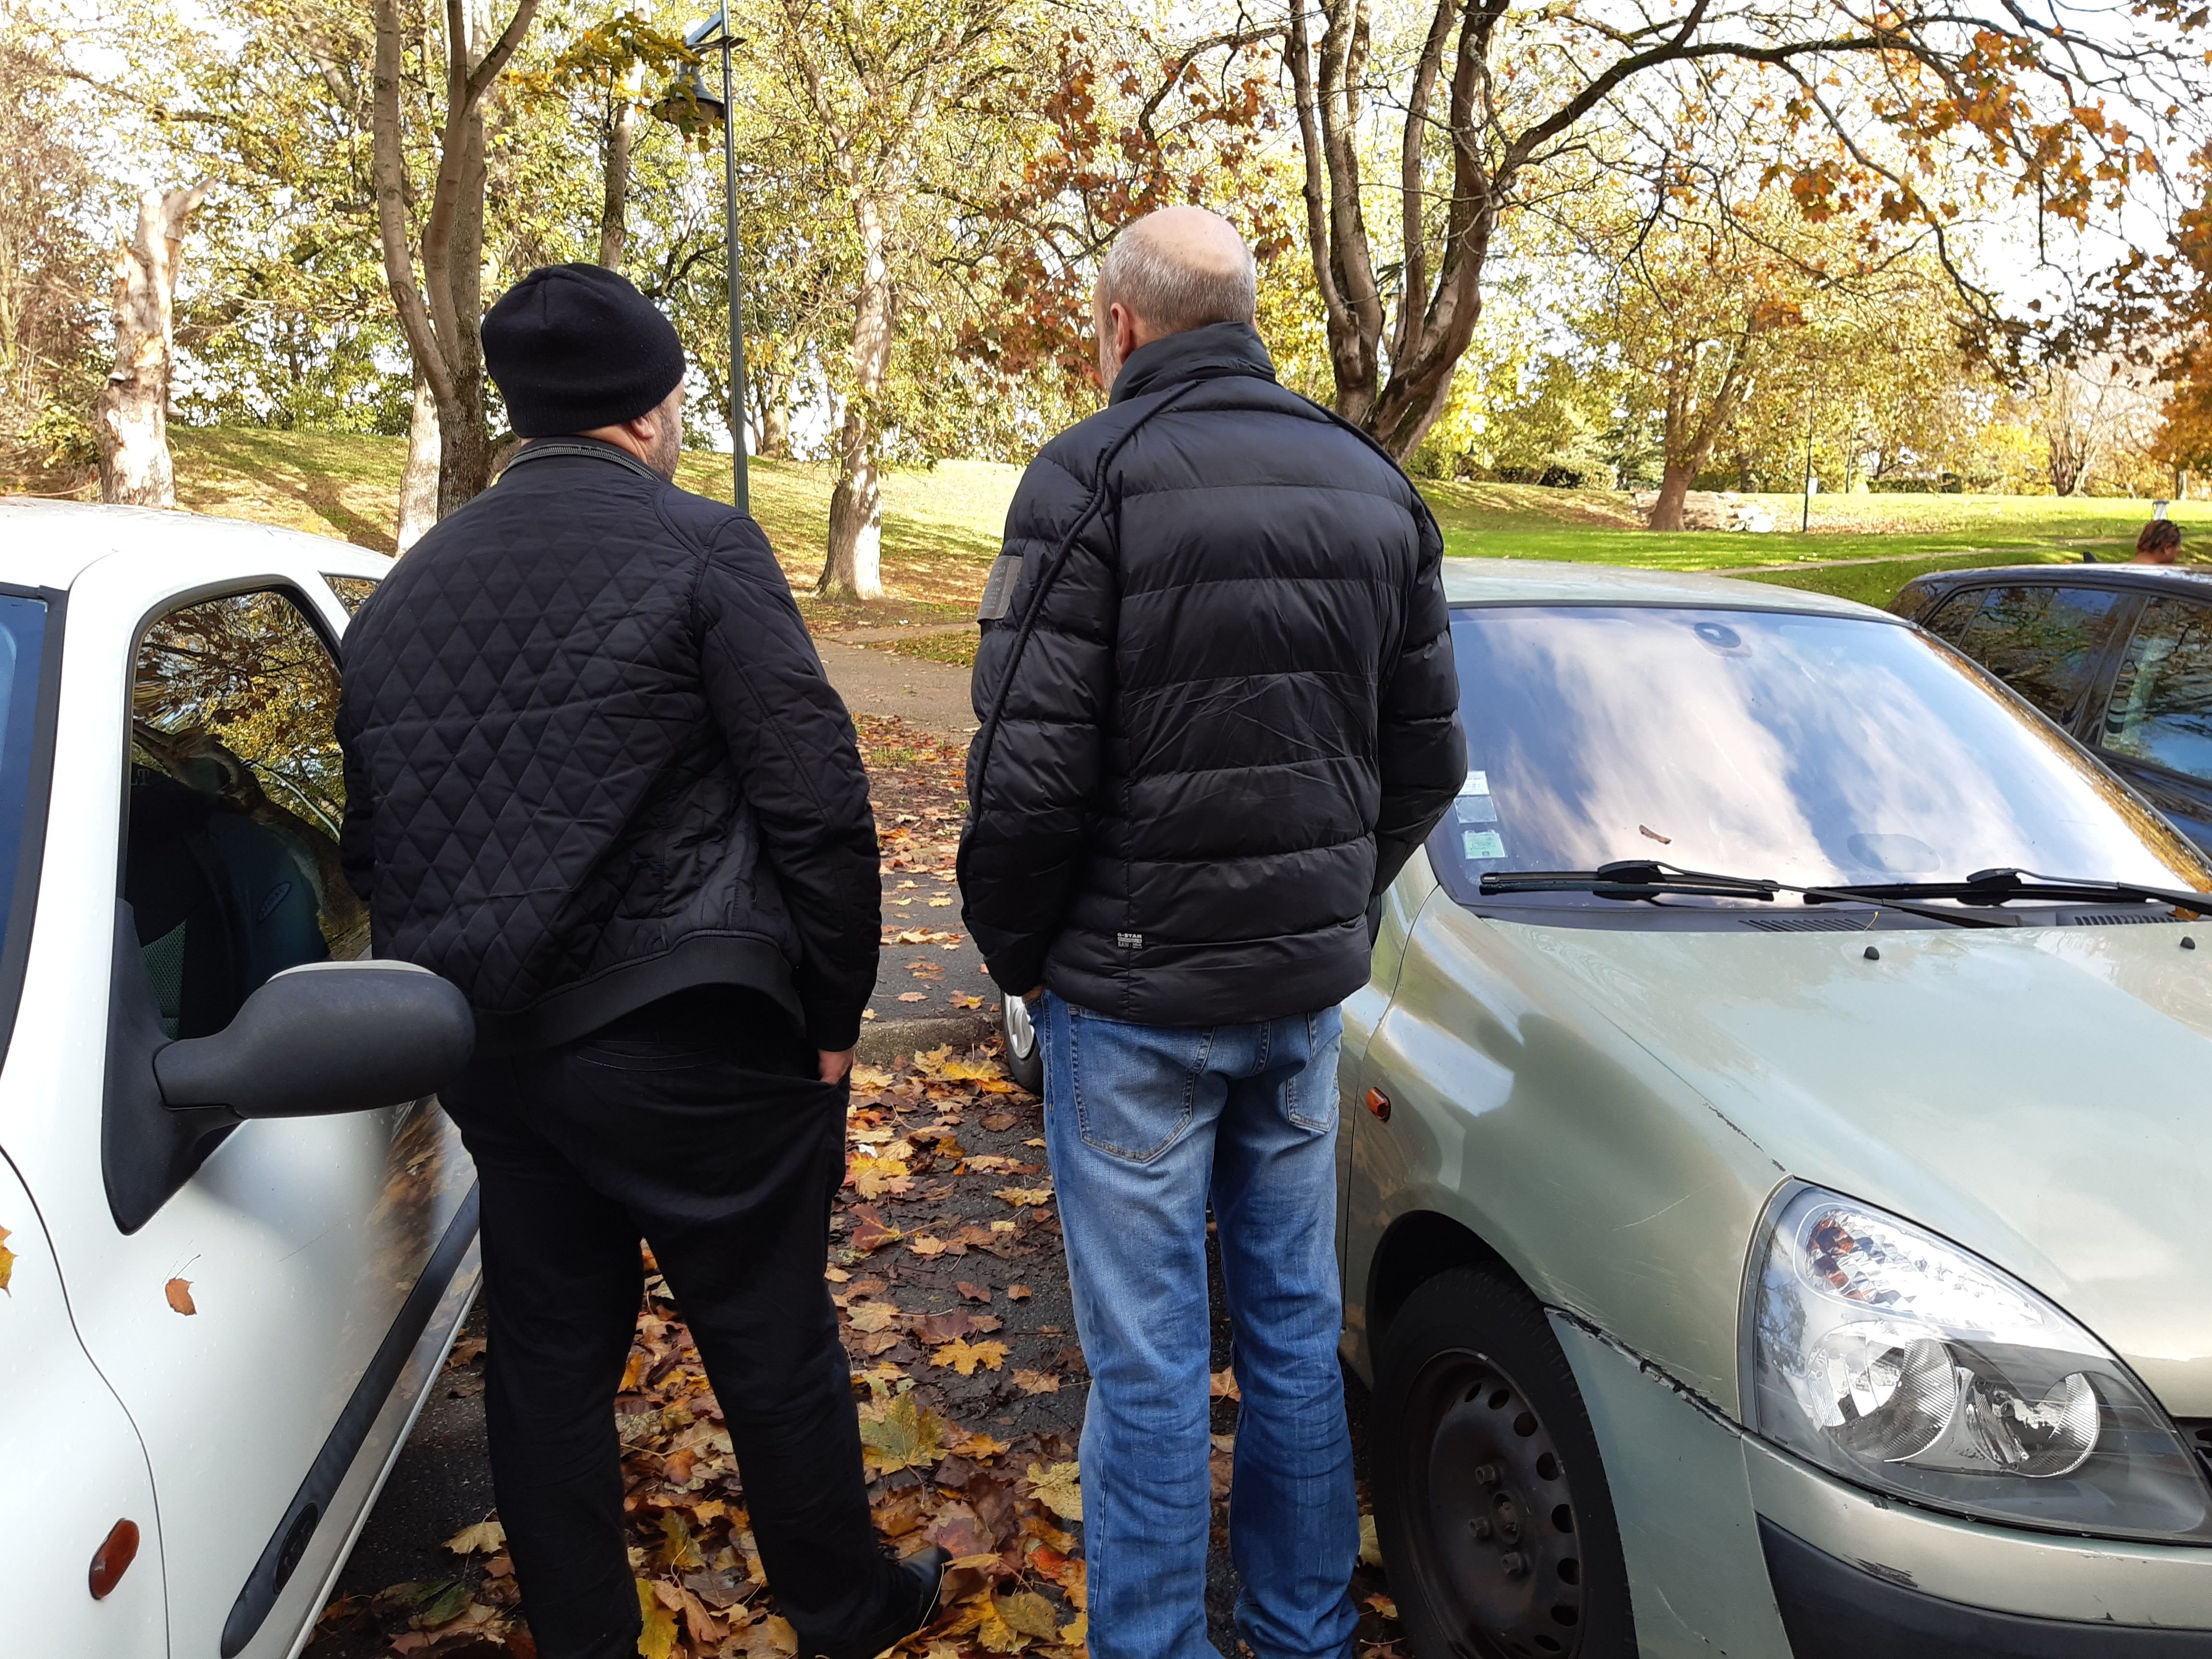 Sarcelles, le 22 novembre 2022. Karim (à gauche, ici avec un de ses voisins), chauffeur de taxi, a acheté une petite Peugeot à 1500 euros. Quand il rentre du travail tard dans la nuit, il la déplace sur la pelouse pour garer son véhicule professionnel. LP/Véronique Beaugrand